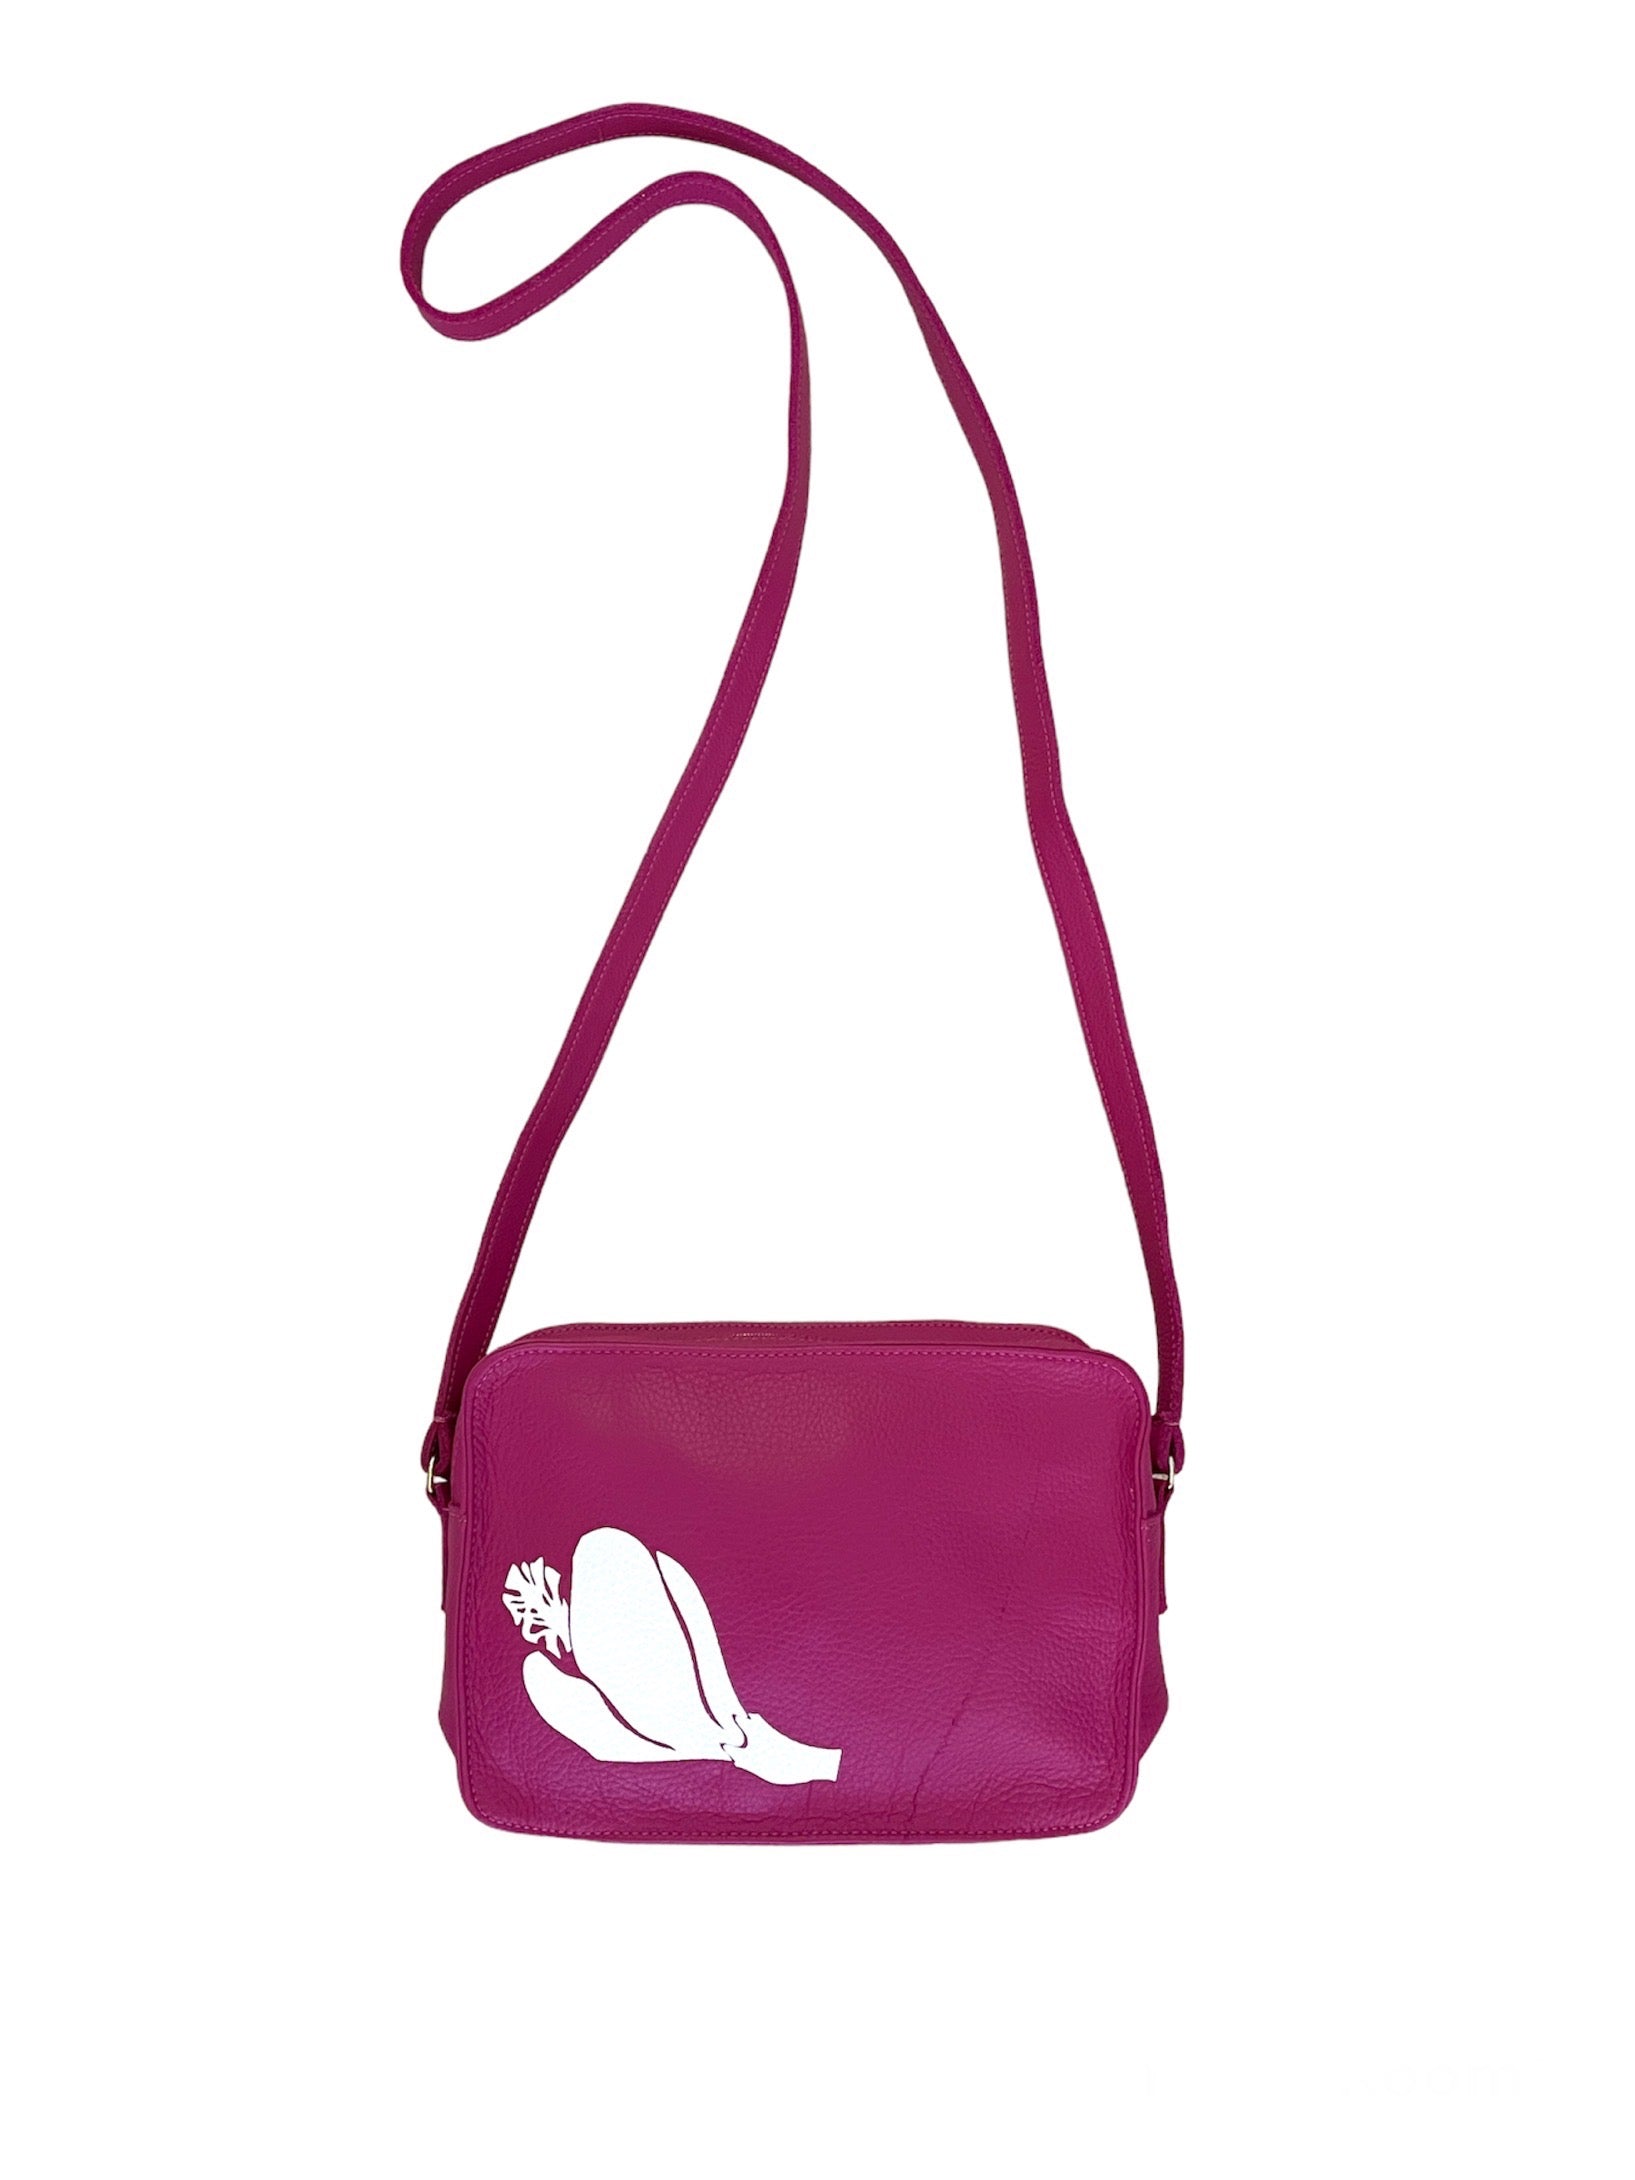 Kaʻilihiwa | Leather crossbody bag - Pua aloalo - pink - *ASF*